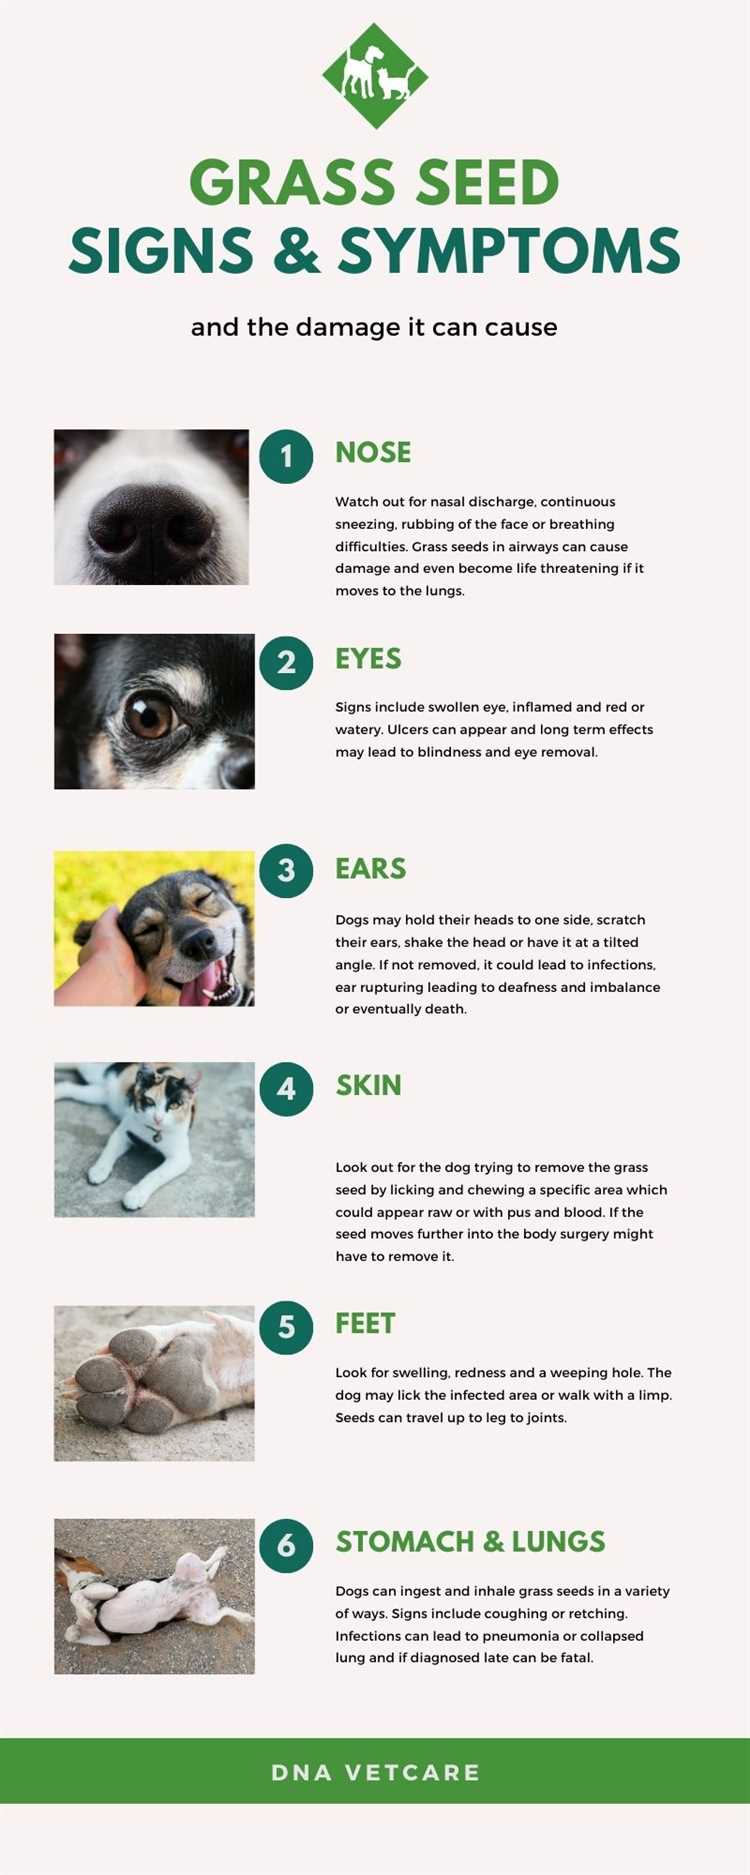 Hvordan kan du forebygge at hunden inhalerer gressfrø?